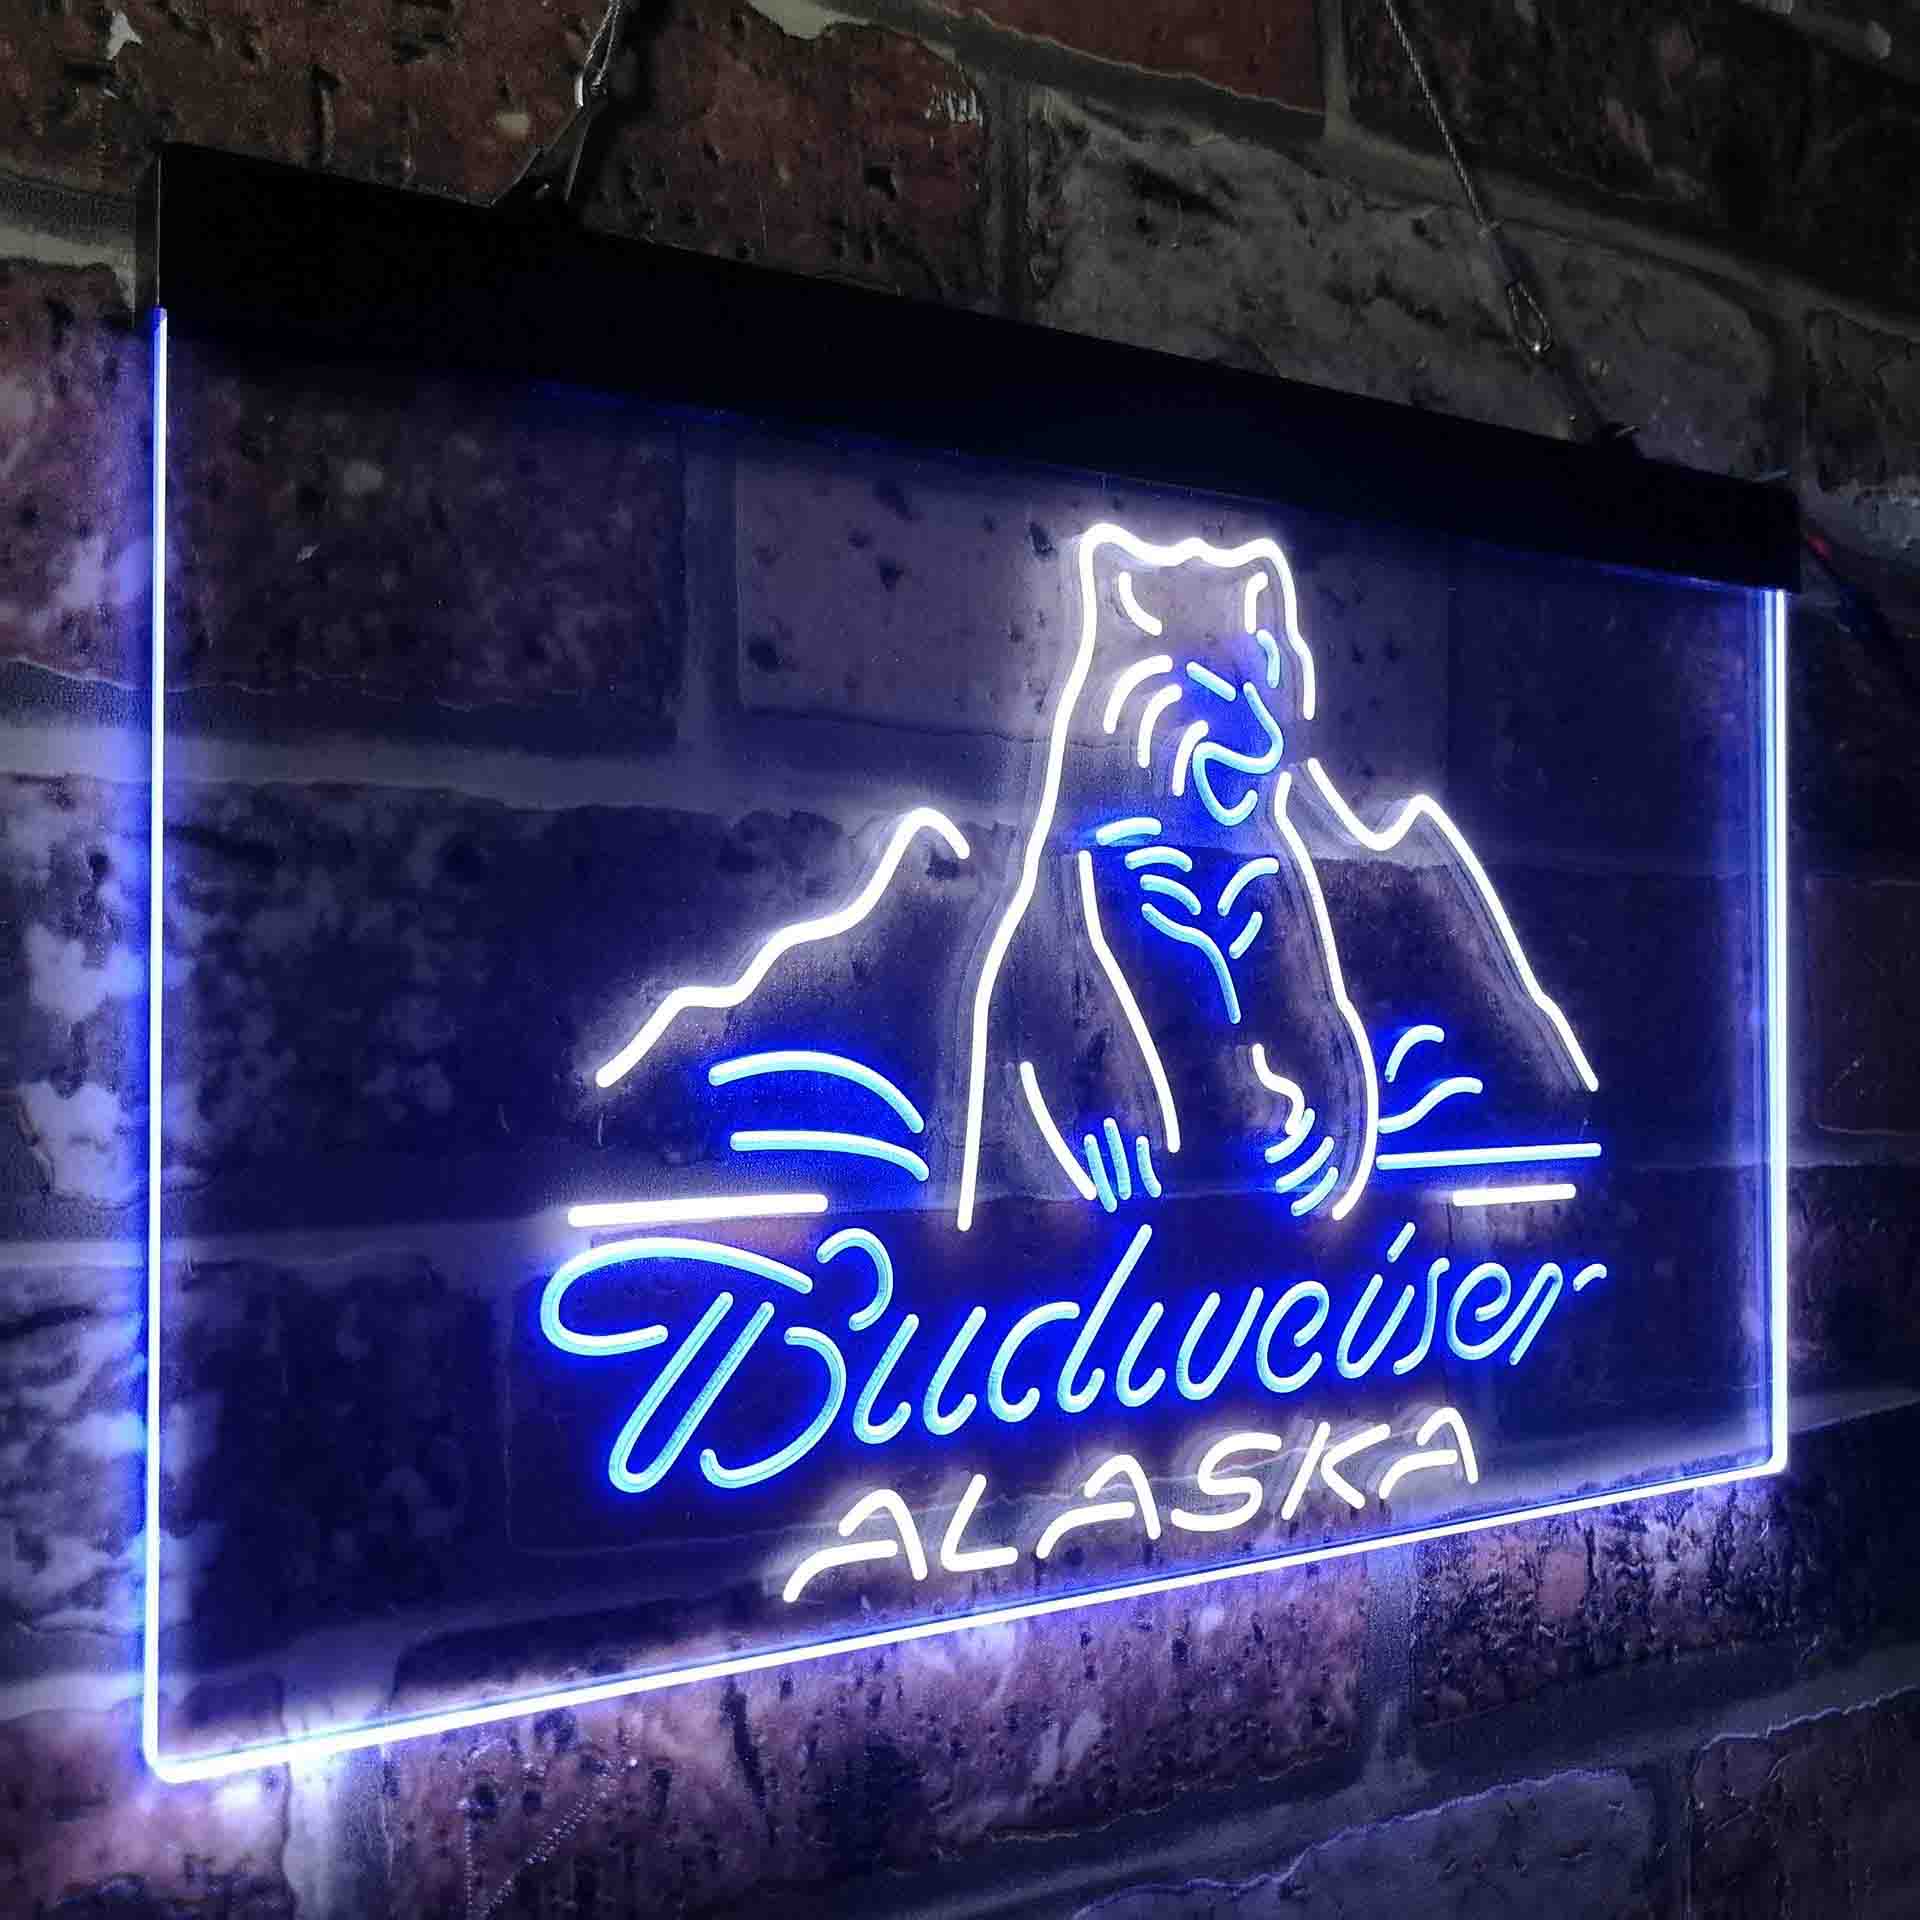 Budweiser Alsaka Polar Bear Beer Neon-Like LED Sign